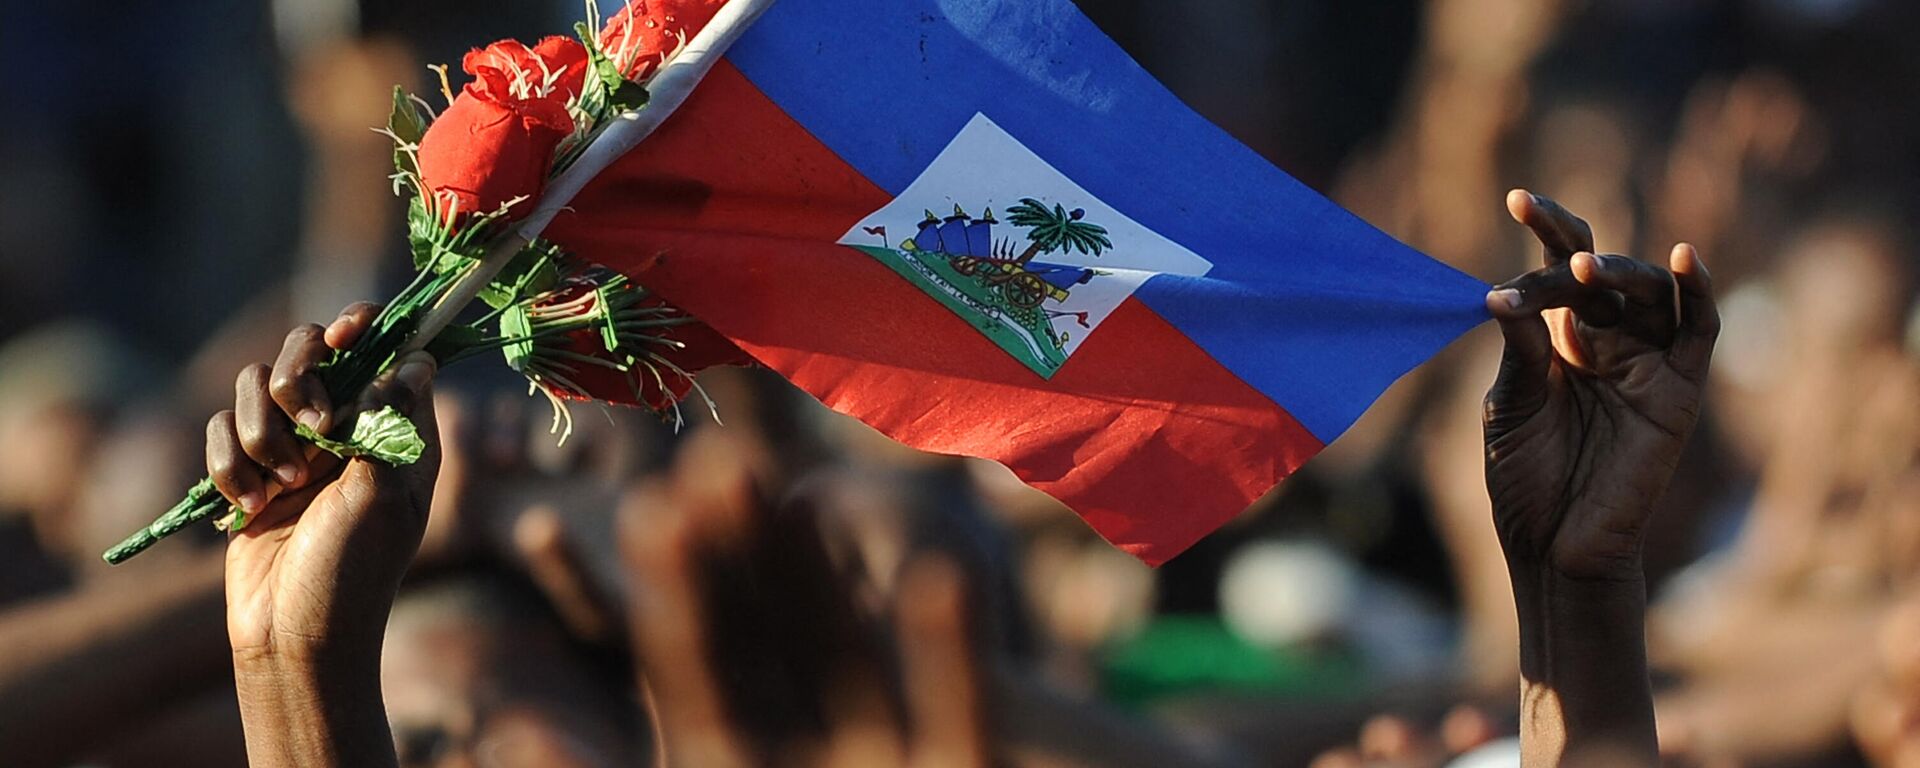 La bandera de Haití - Sputnik Mundo, 1920, 15.07.2021